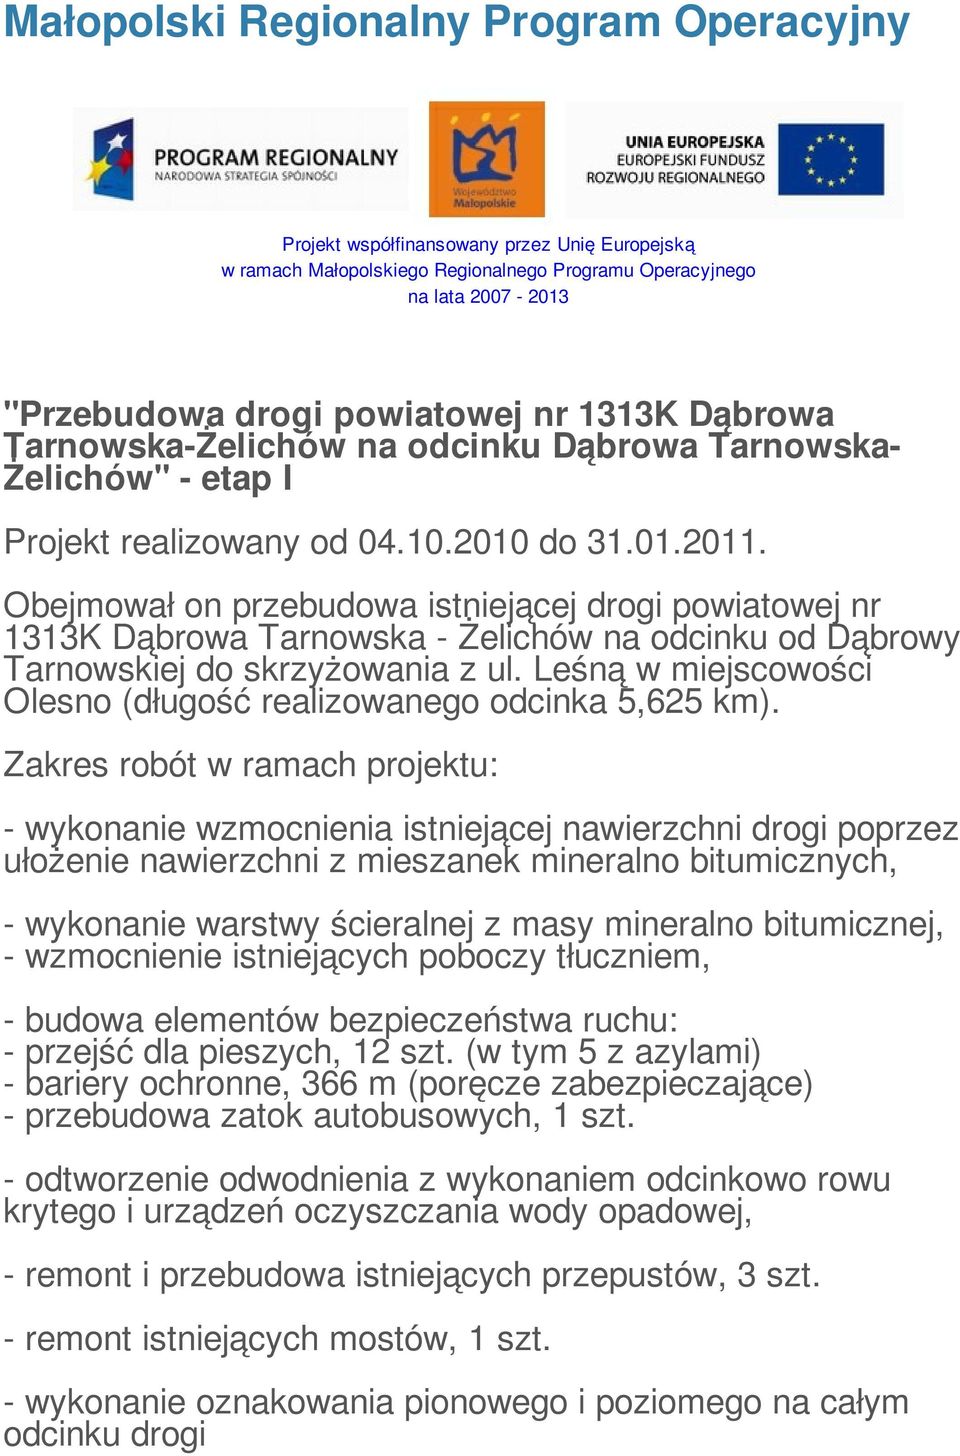 Obejmował on przebudowa istniejącej drogi powiatowej nr 1313K Dąbrowa Tarnowska - Żelichów na odcinku od Dąbrowy Tarnowskiej do skrzyżowania z ul.